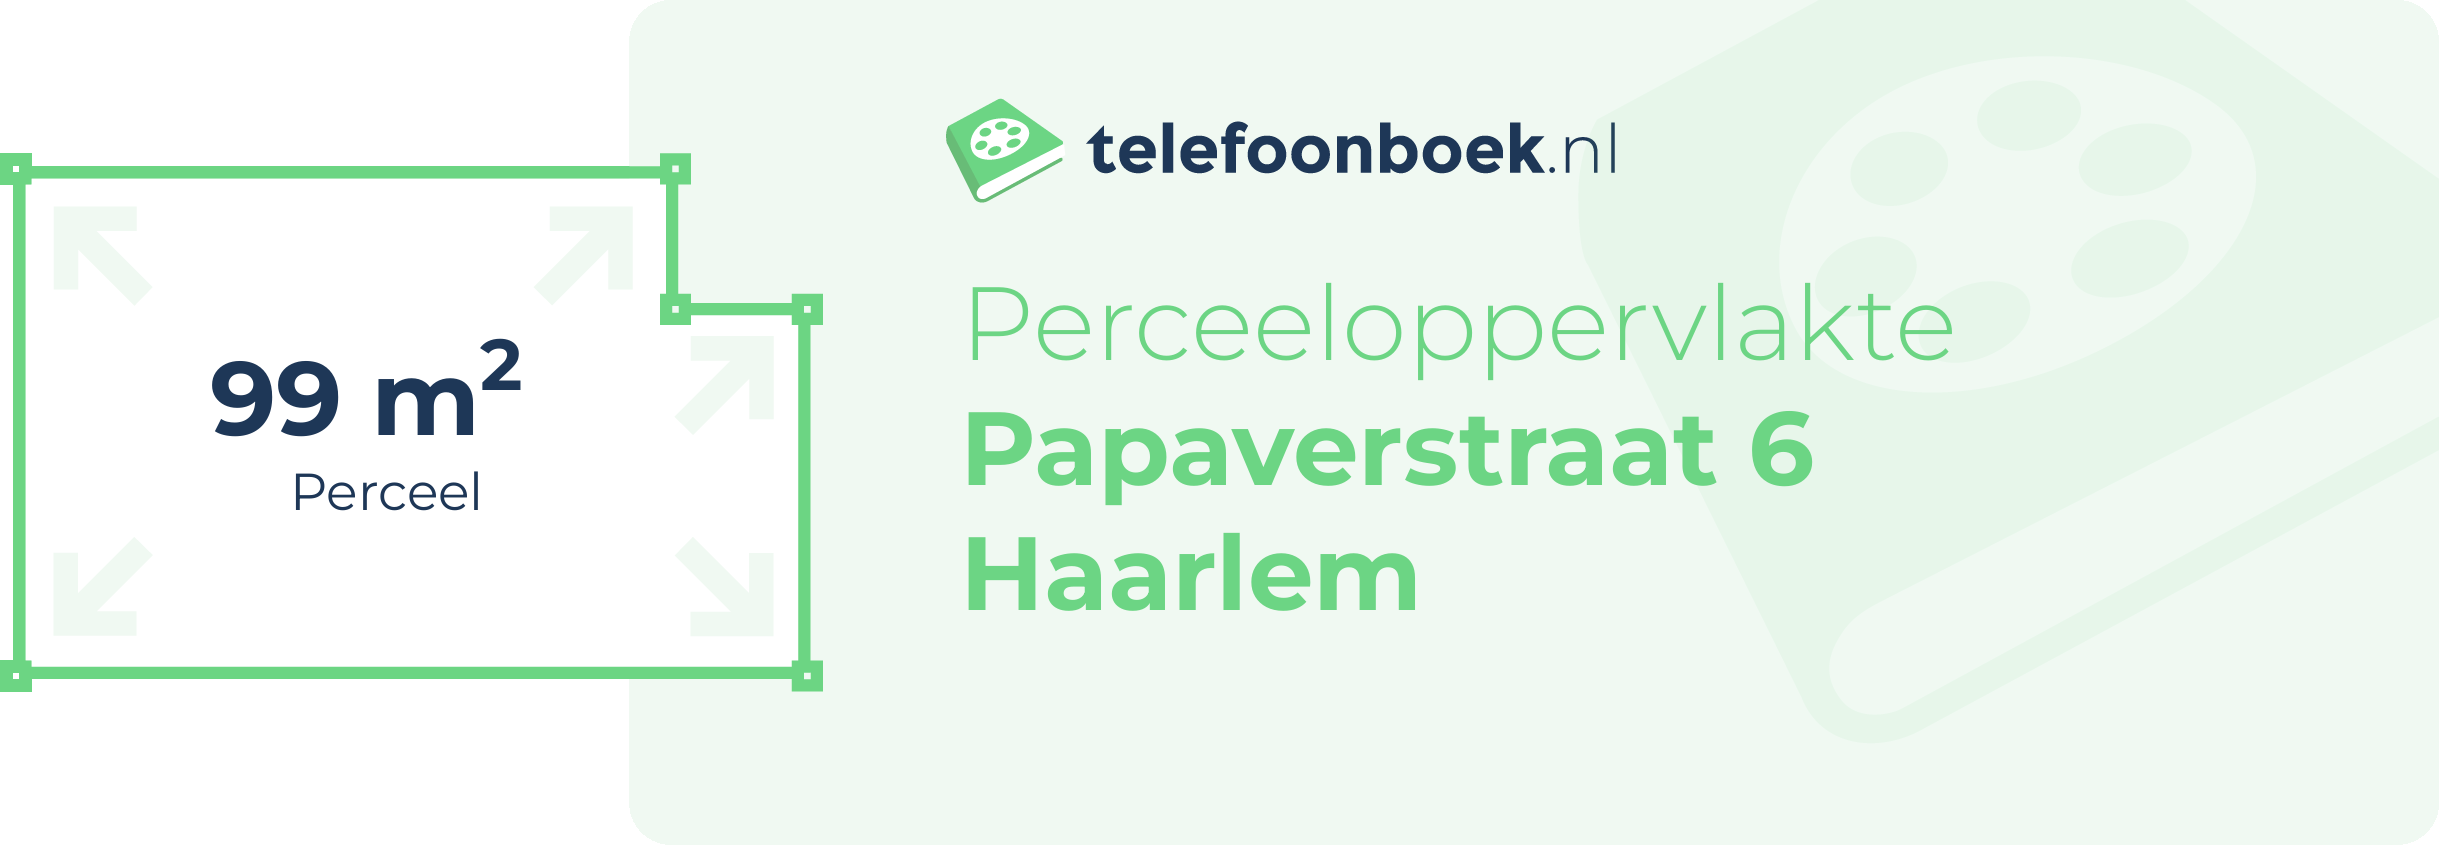 Perceeloppervlakte Papaverstraat 6 Haarlem